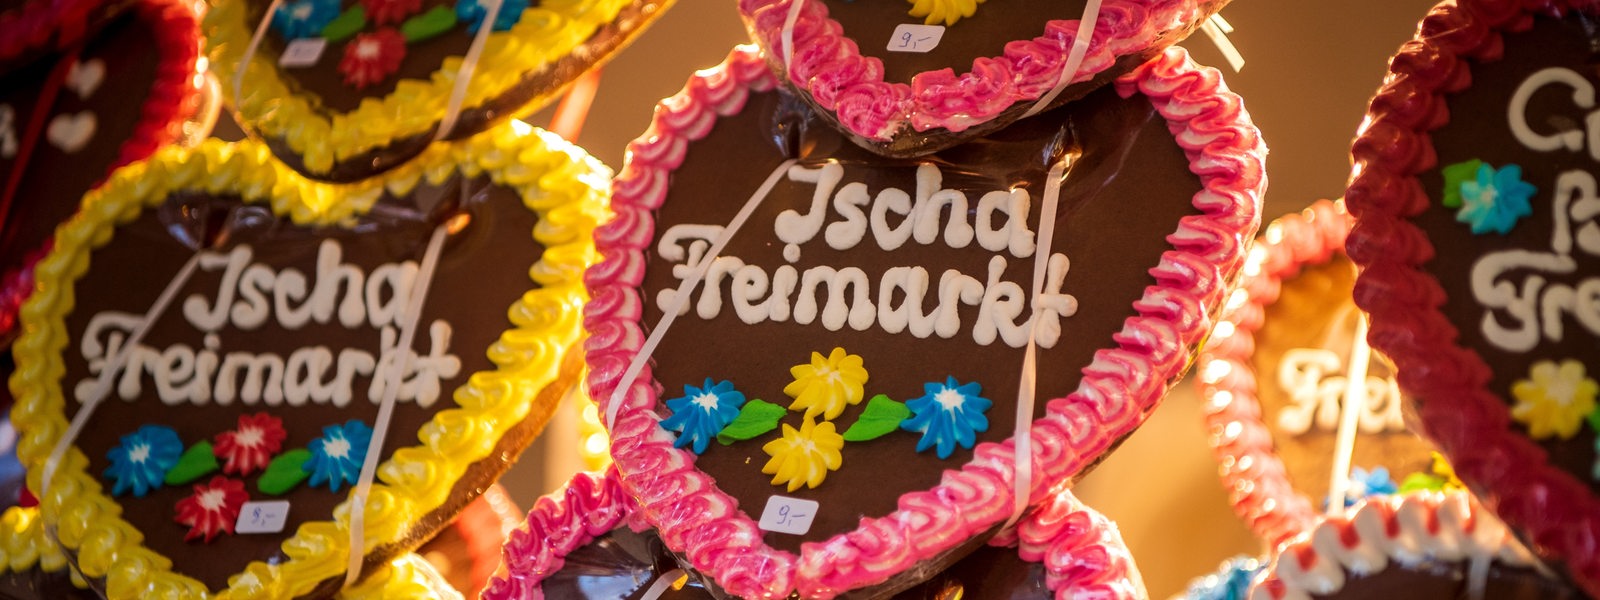 Lebkuchen-Herzen mit der Aufschrift "Ischa Freimarkt"